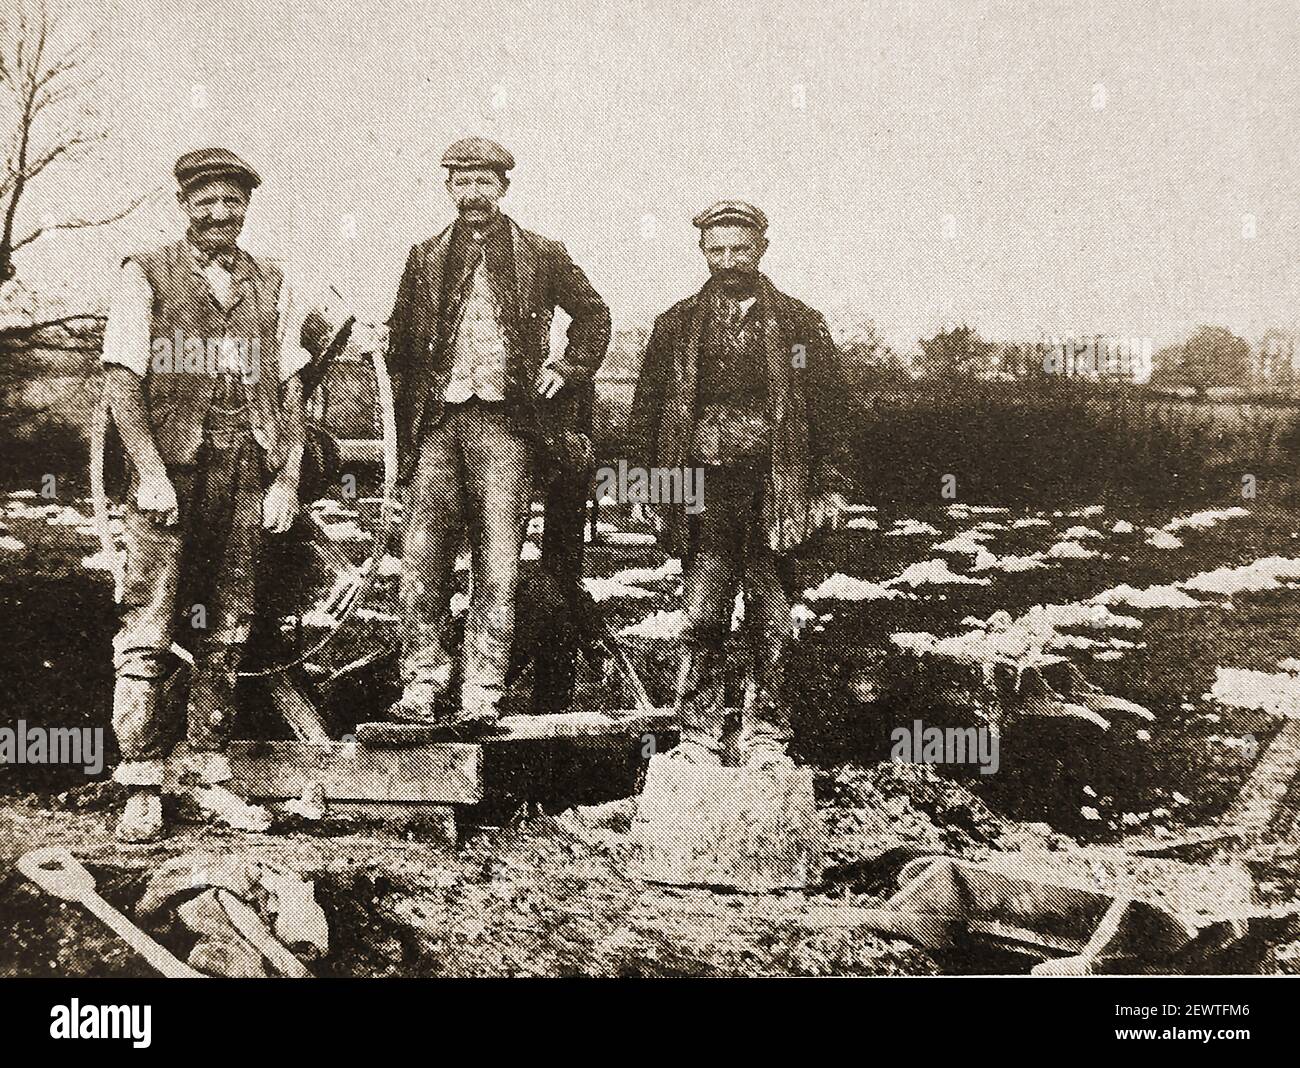 Ein altes Pressefoto, ca. 1930s 'von Hertfordshire Arbeitern 'Kreiden aus Gruben' (im Gegensatz zu tiefen Bergbau es) Dies bedeutete Graben Kreide auf Feldern zu verbreiten, um die Fruchtbarkeit zu verbessern). Die drei Männer sind neben einem flachen Schaft mit dem Rad zu sehen, um es an die Oberfläche hinter ihnen zu schleppen. Stockfoto